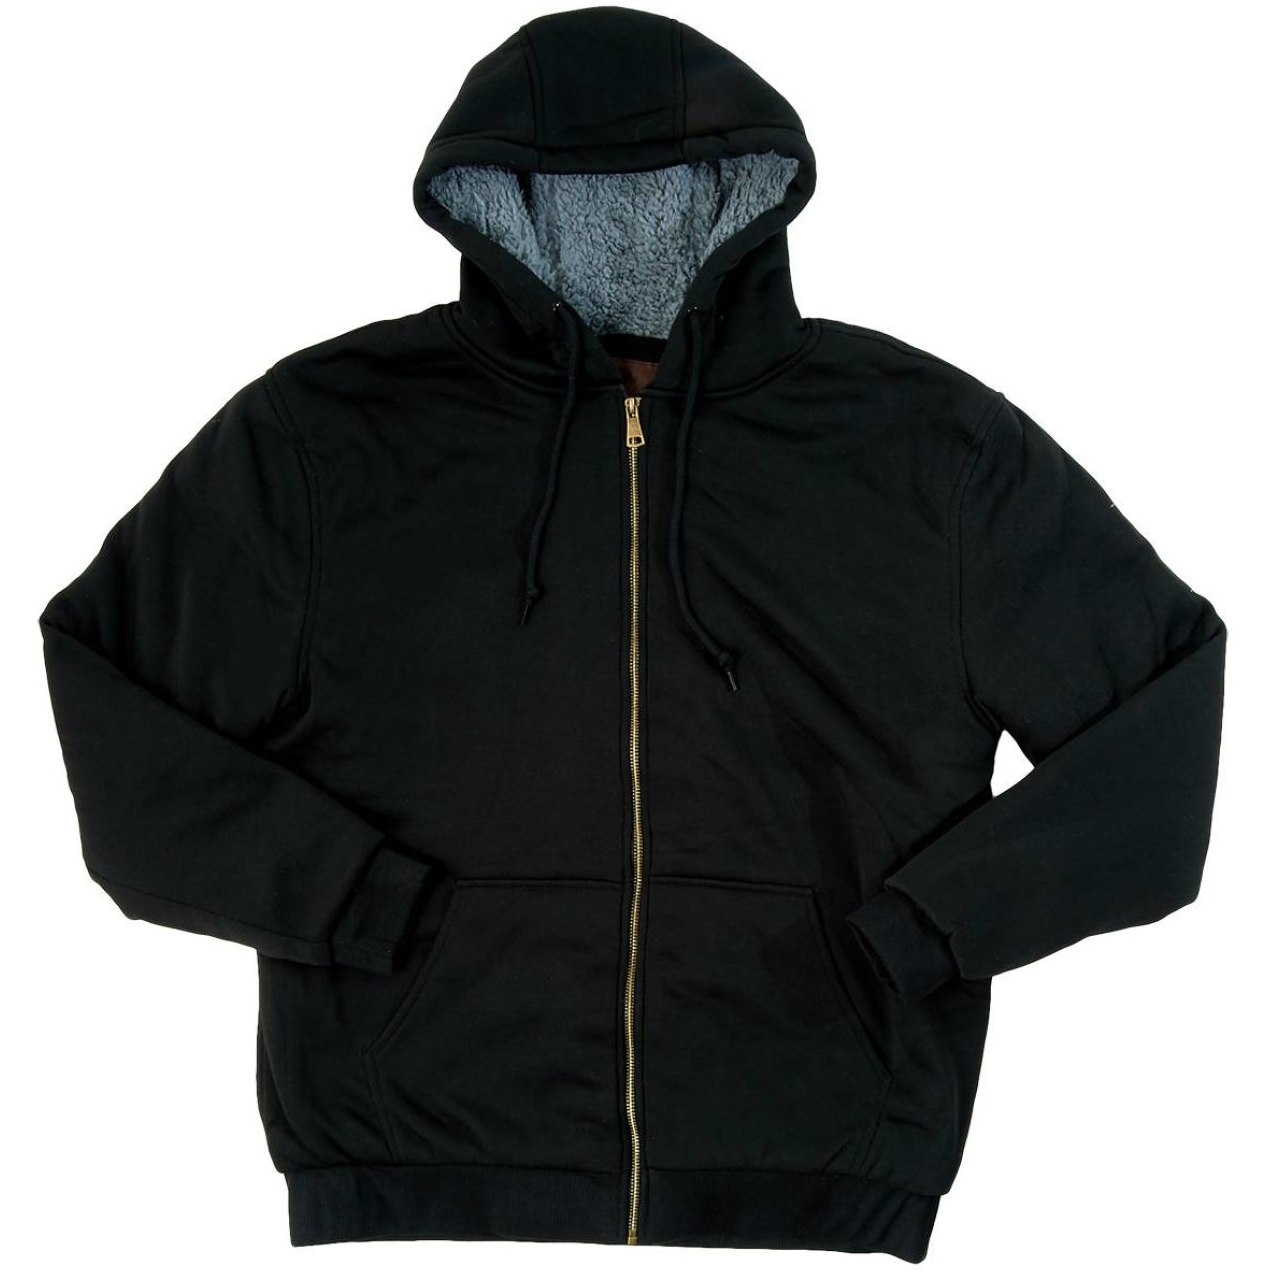 Men's Mountain Ridge sherpa fleece hooded jacket for $10 - Clark Deals